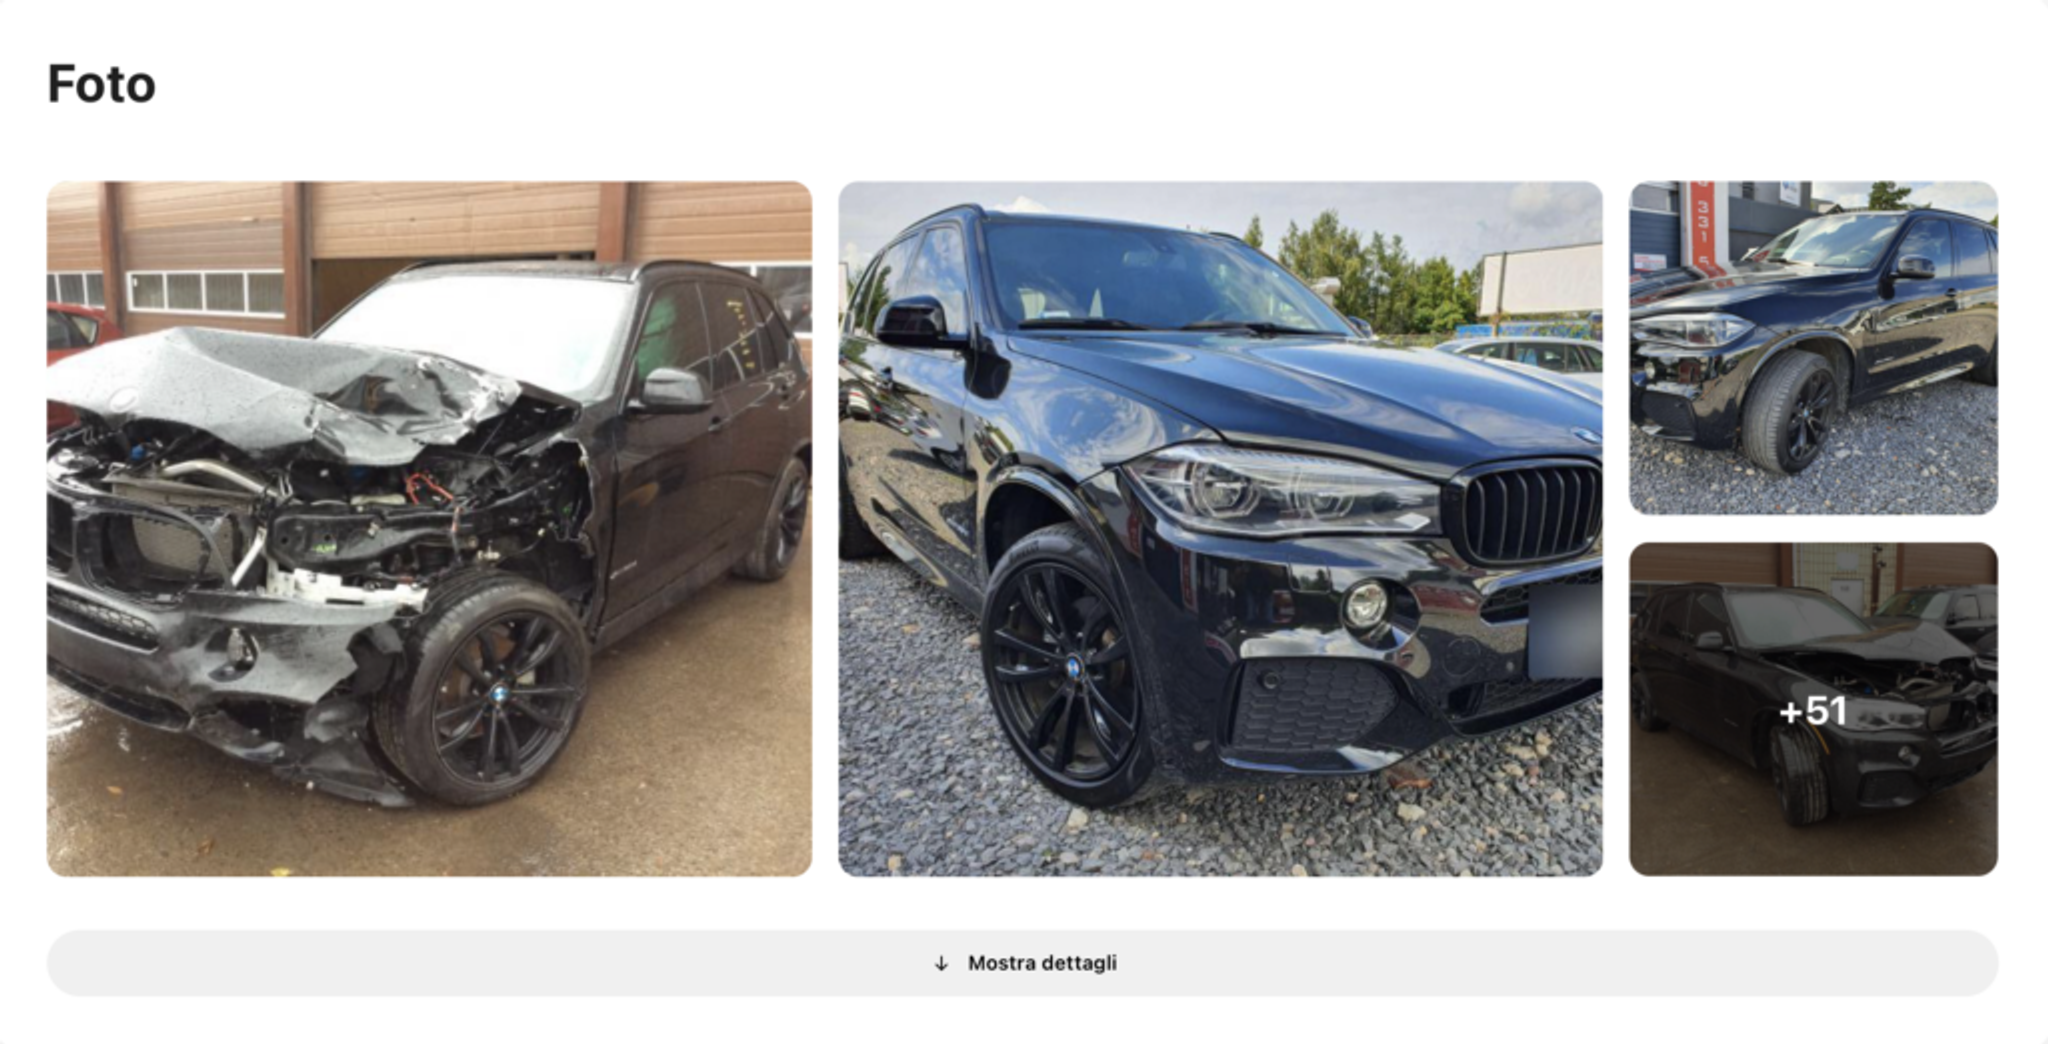 Foto BMW dopo un incidente ritrovate in carVertical, auto danneggiata, veicolo distrutto, auto prima e dopo gravi riparazioni